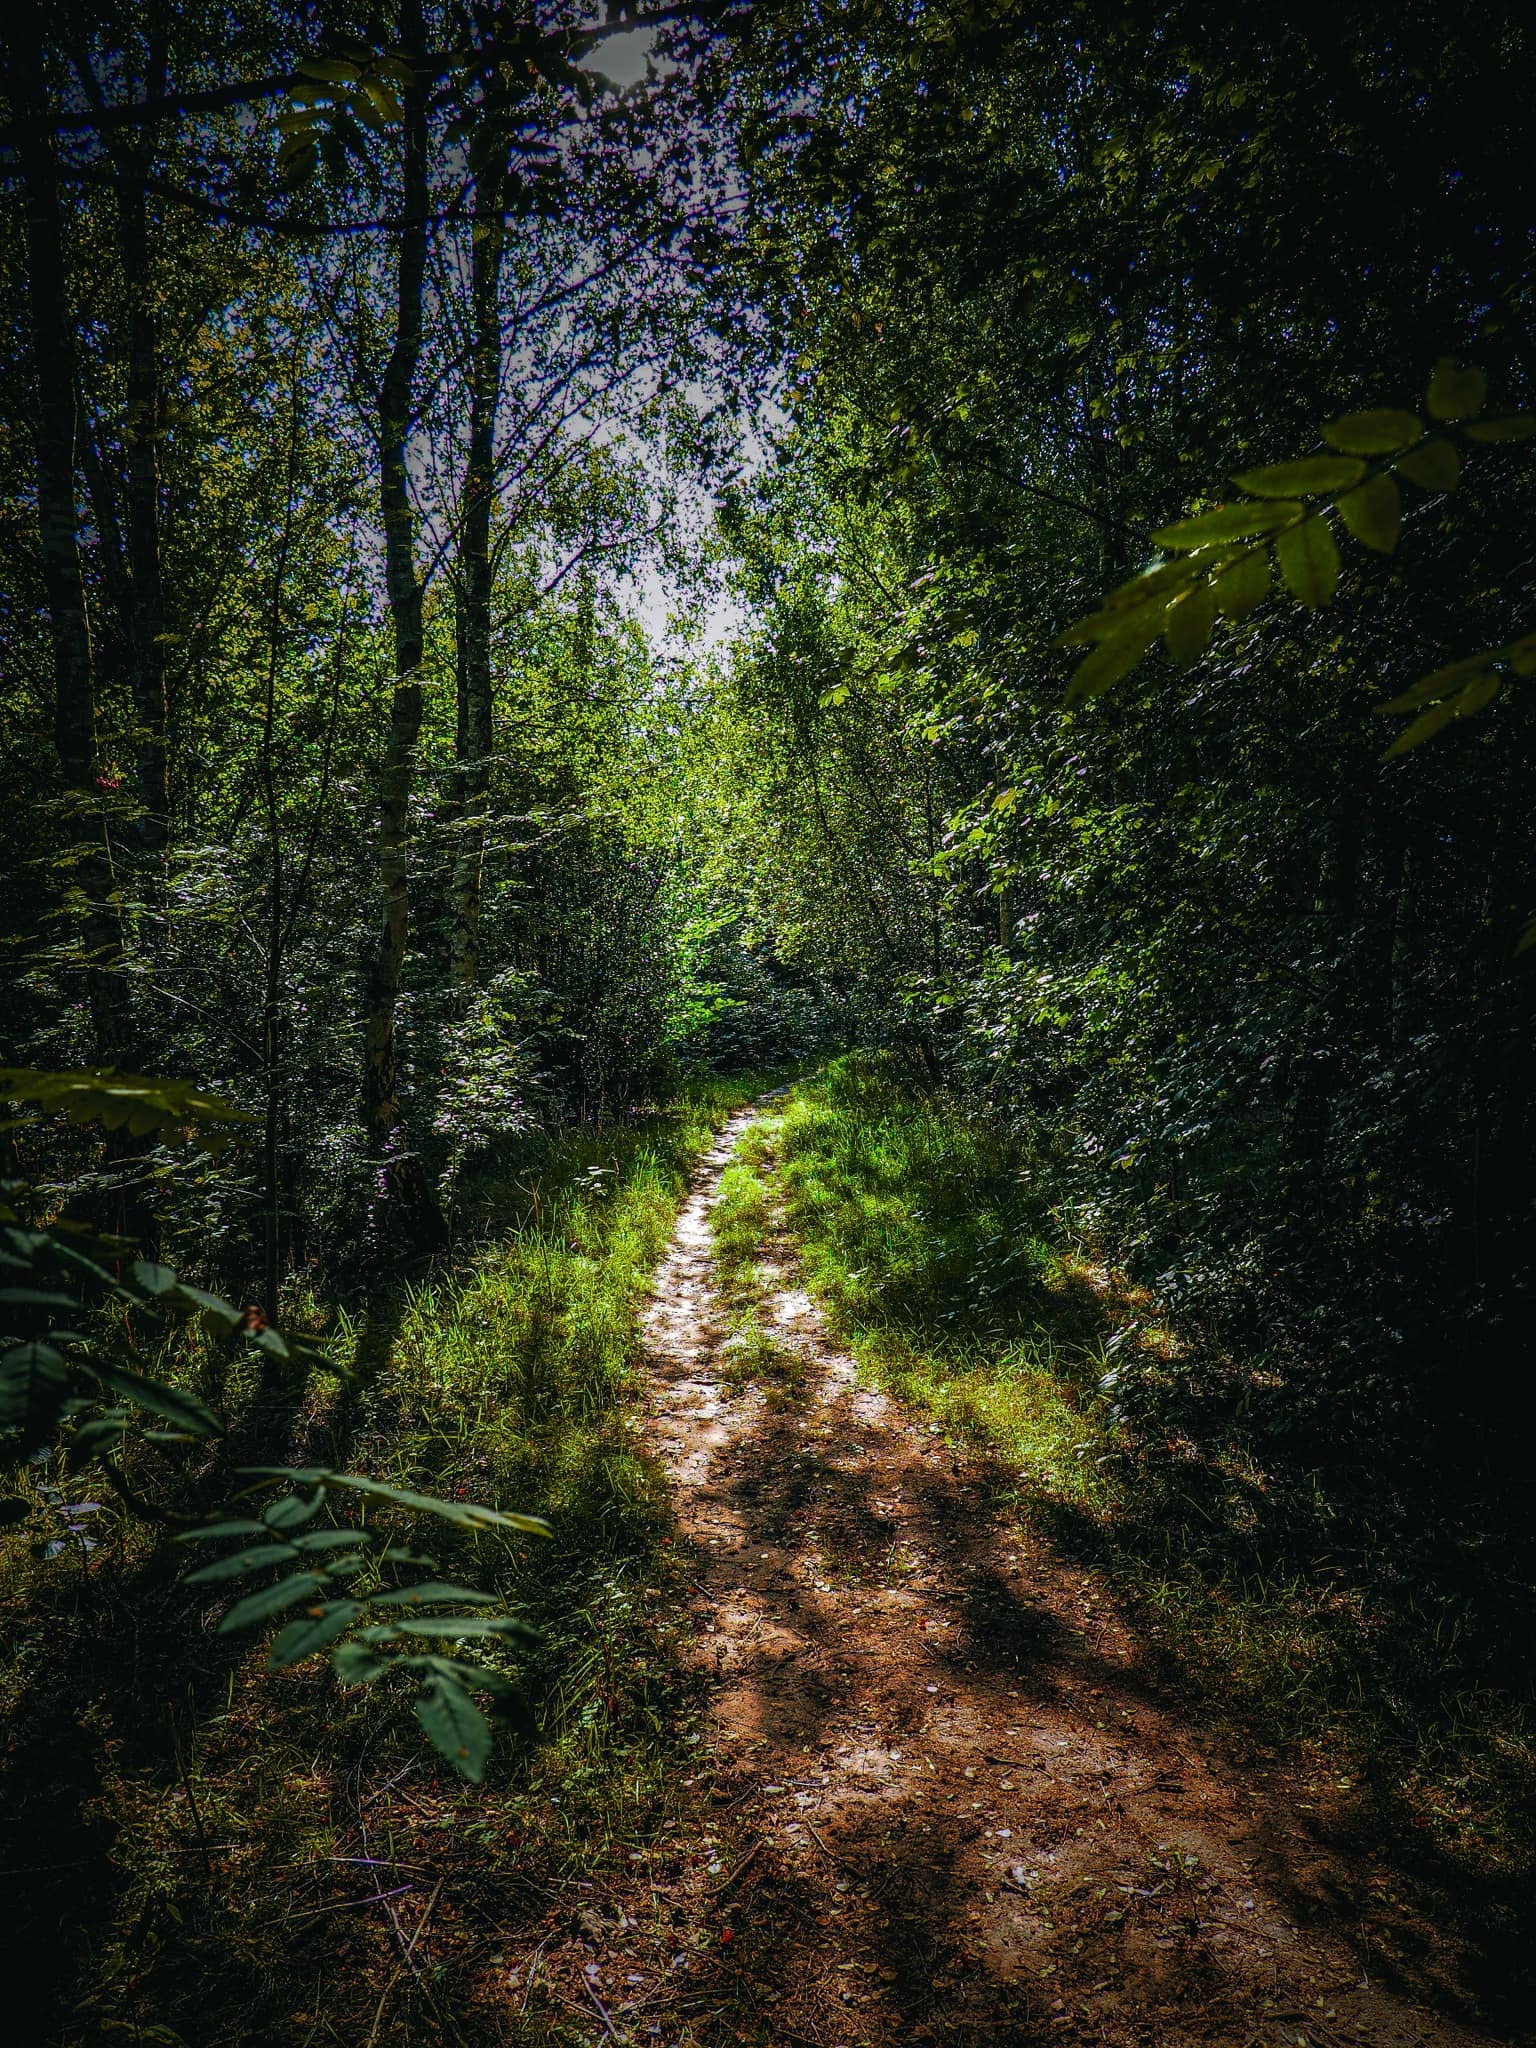 Woodland walks by Gareth Olley